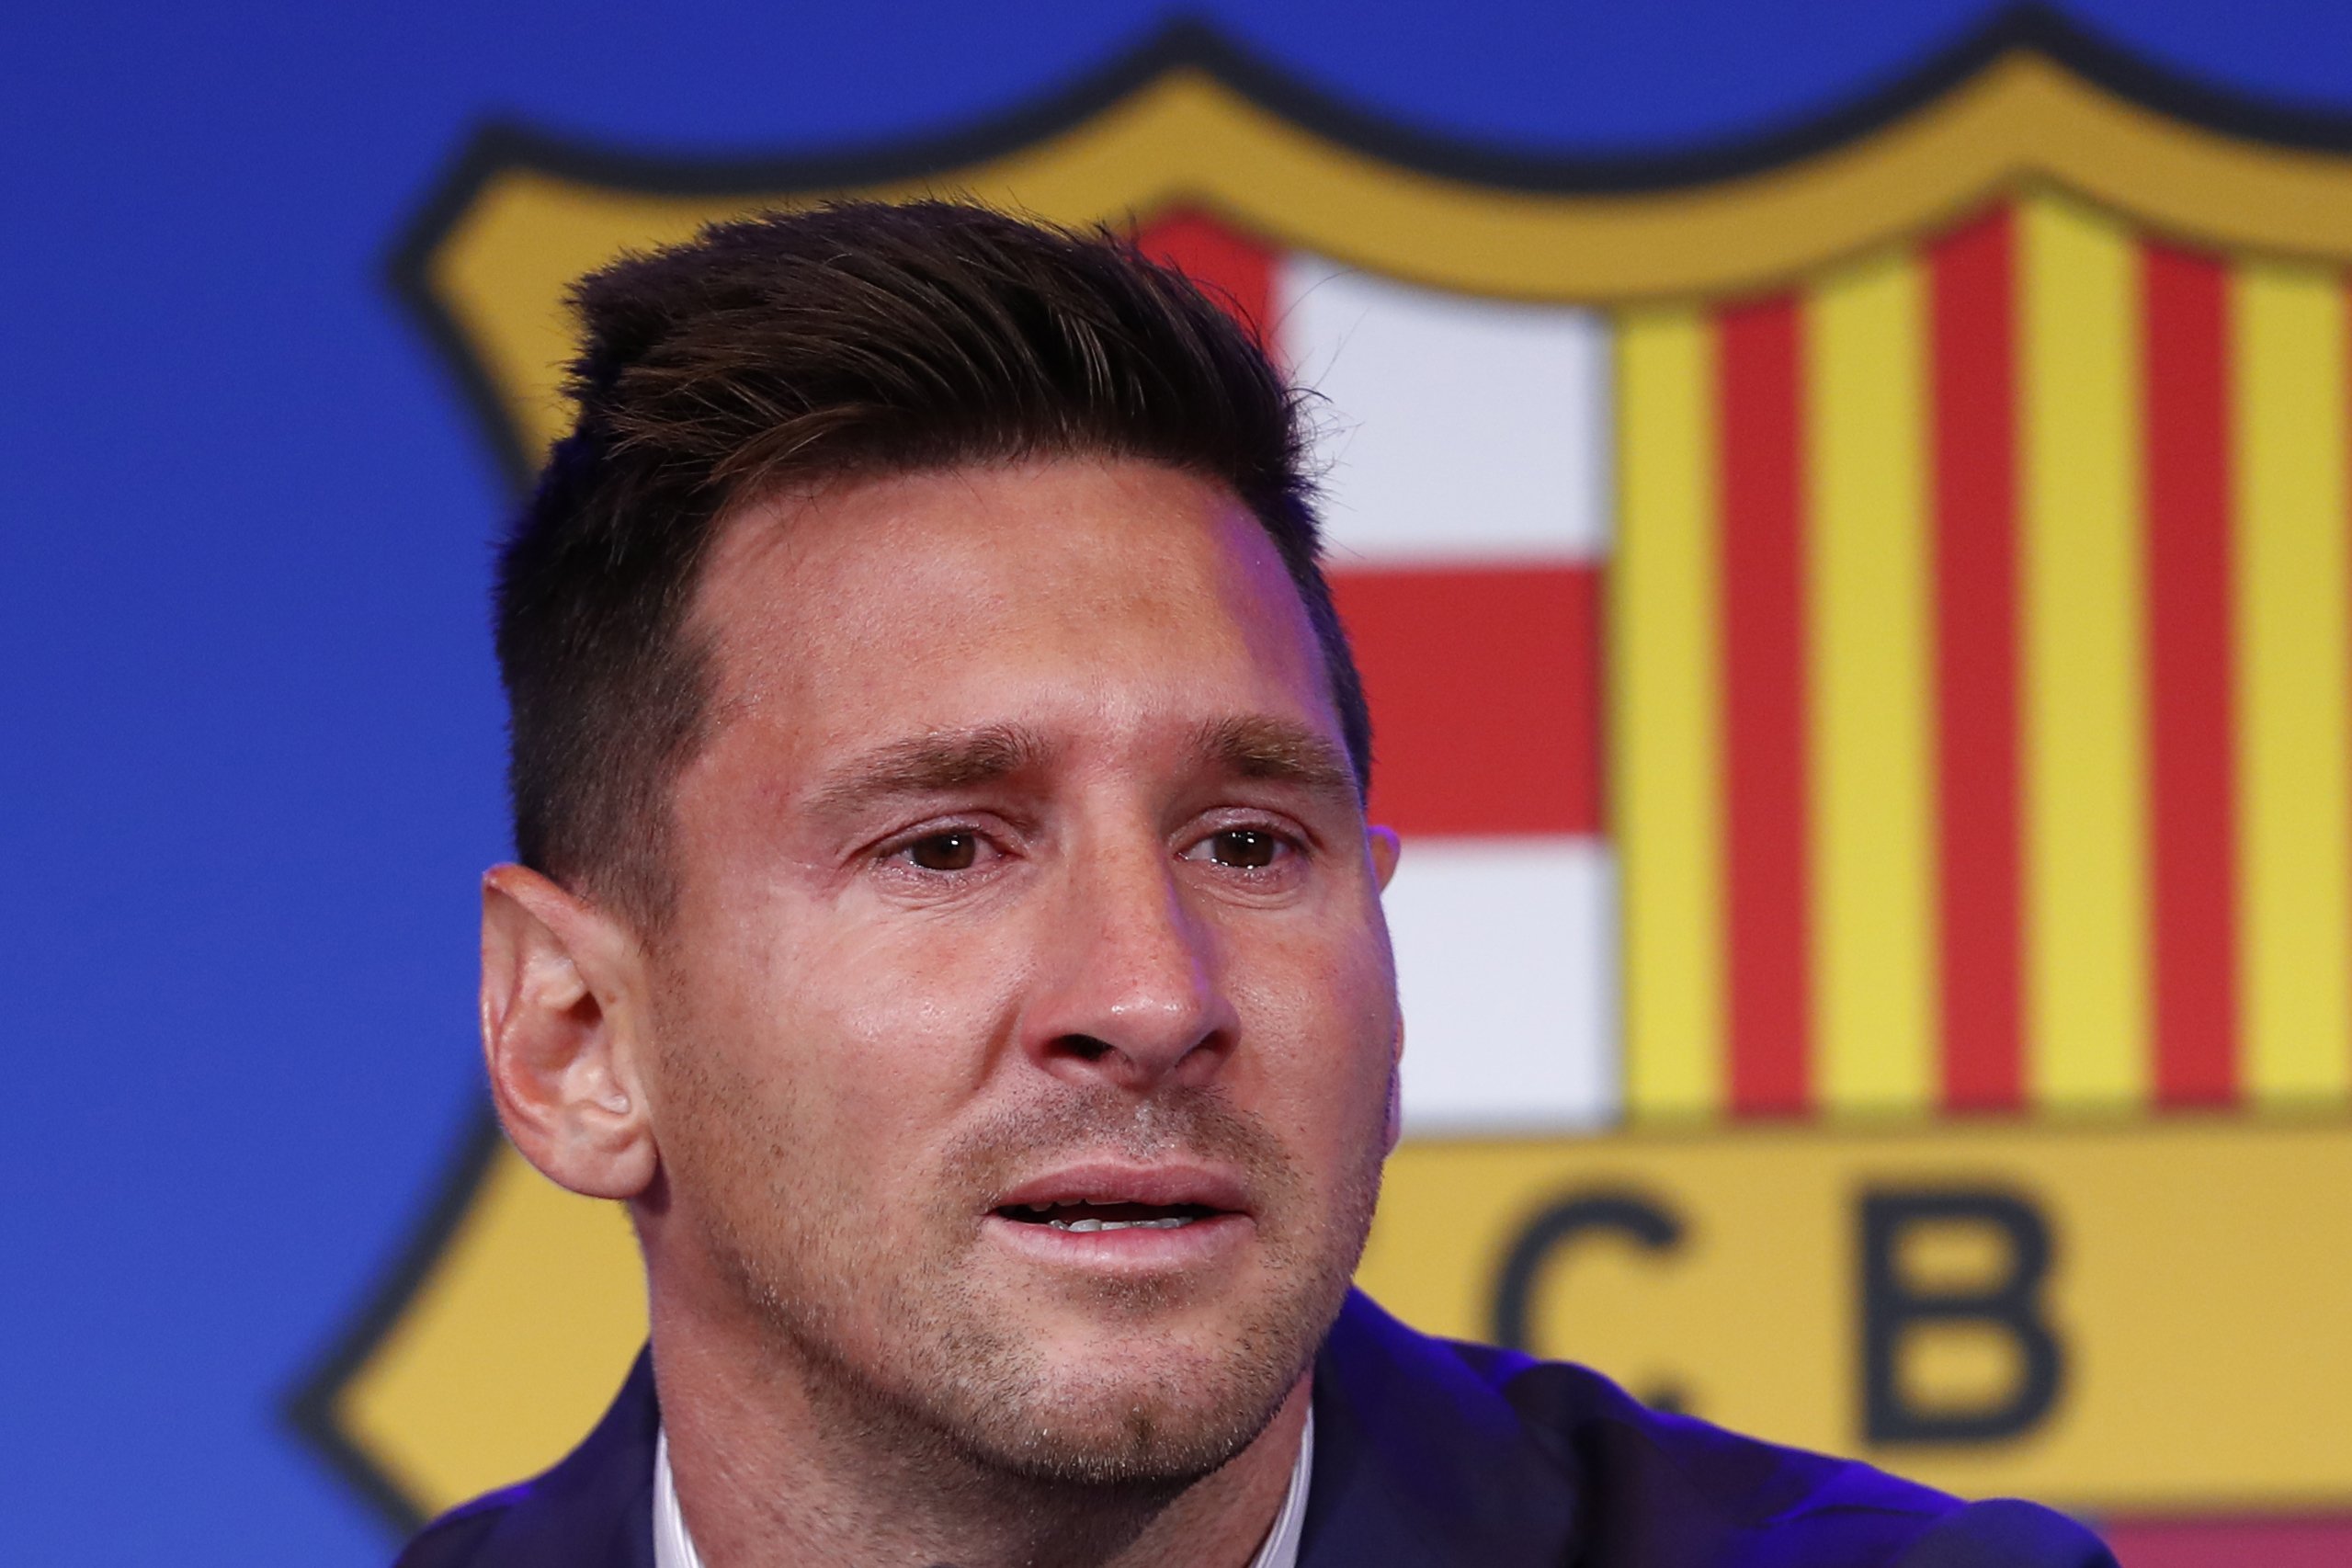 Un VIP de TV3 critica les preguntes dels "putus periodistes" a Leo Messi